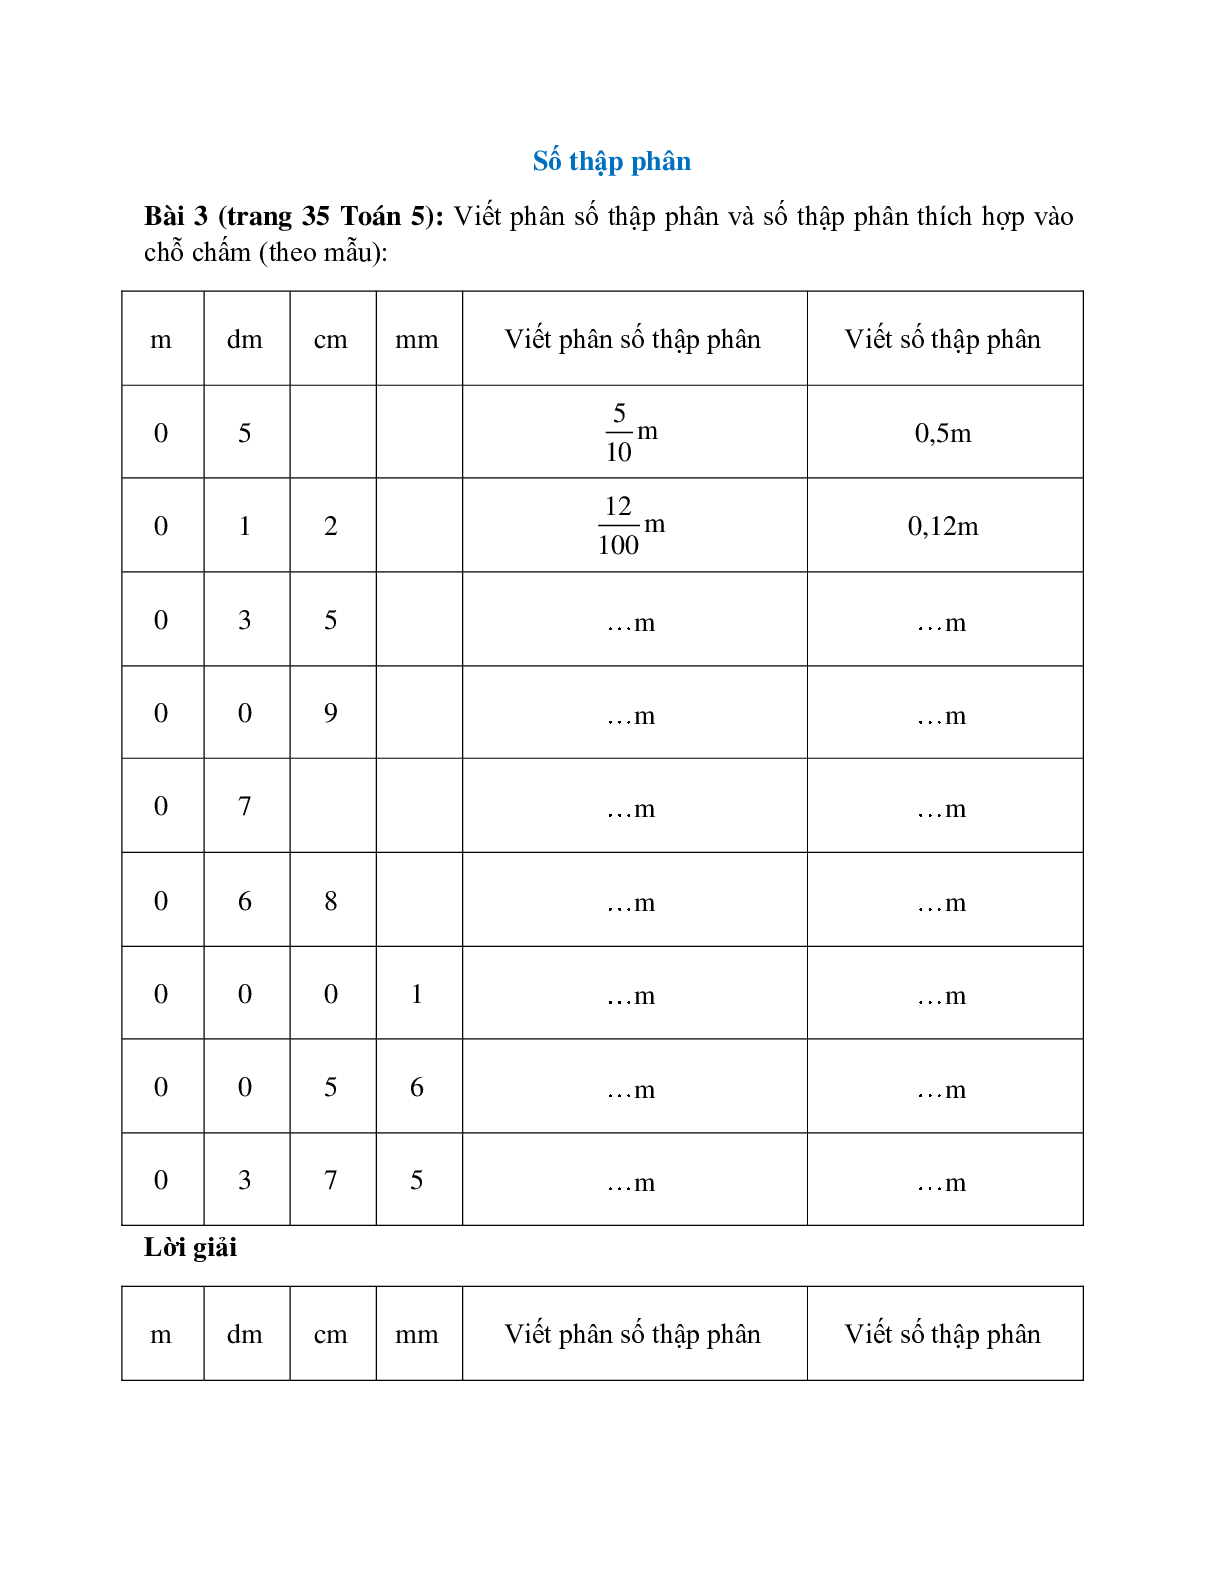 Viết phân số thập phân và số thập phân thích hợp vào chỗ chấm theo mẫu (trang 1)